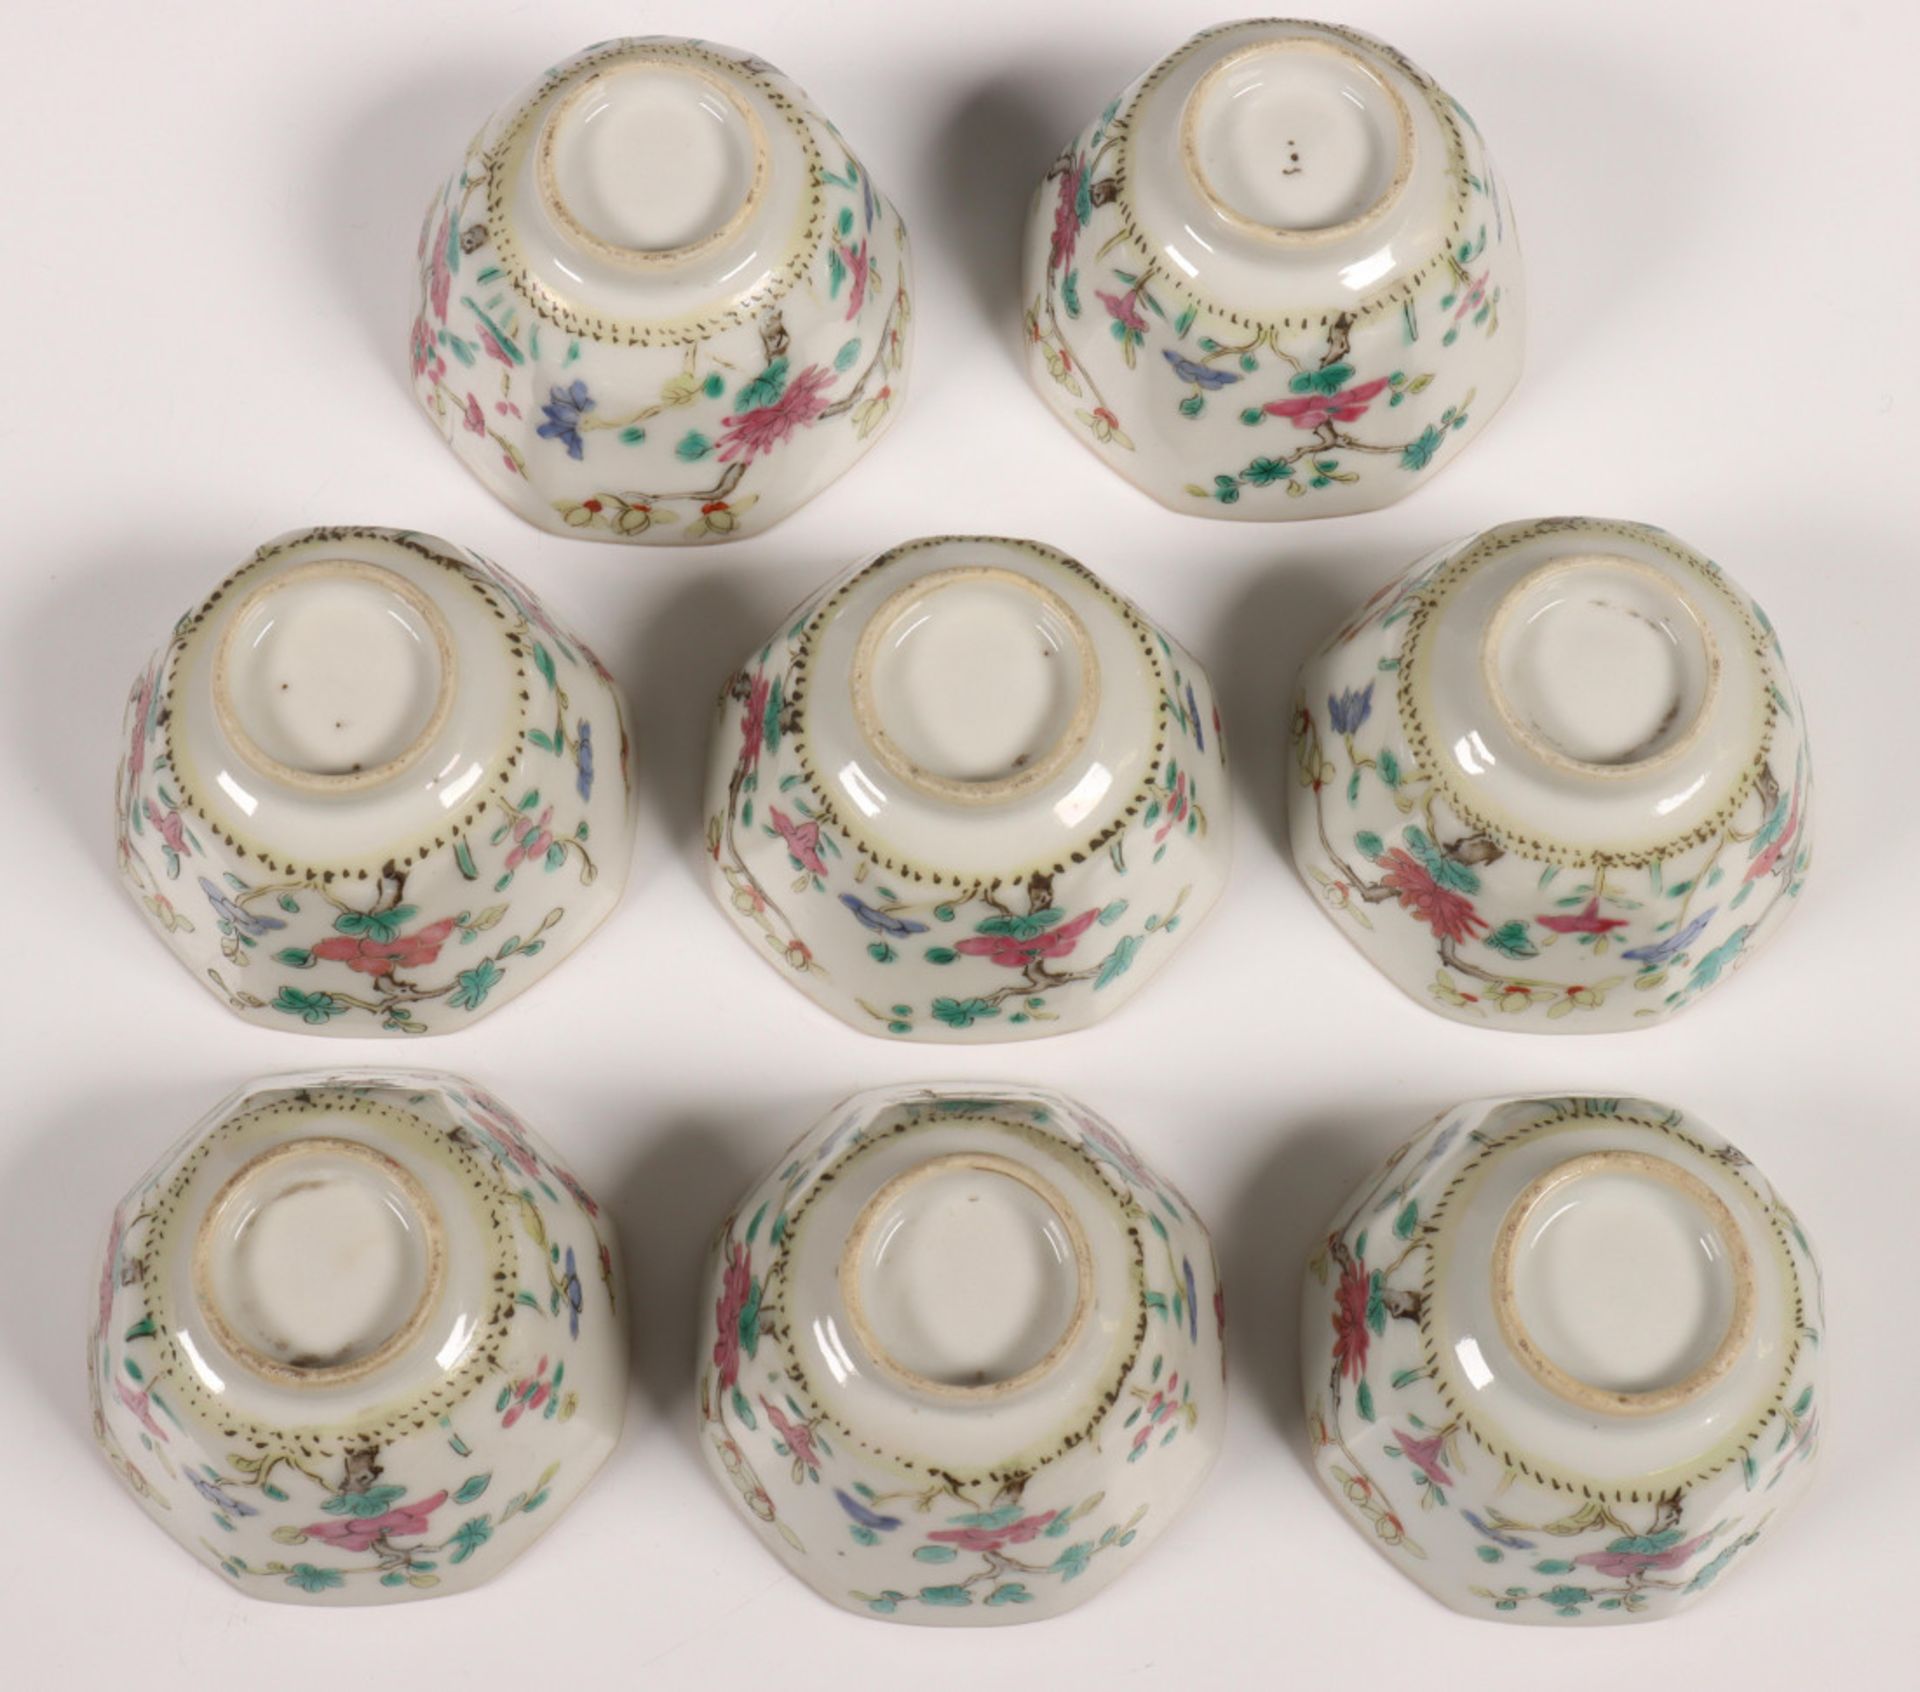 China, acht kantige porseleinen kopjes, laat Qing dynastie. - Image 4 of 8